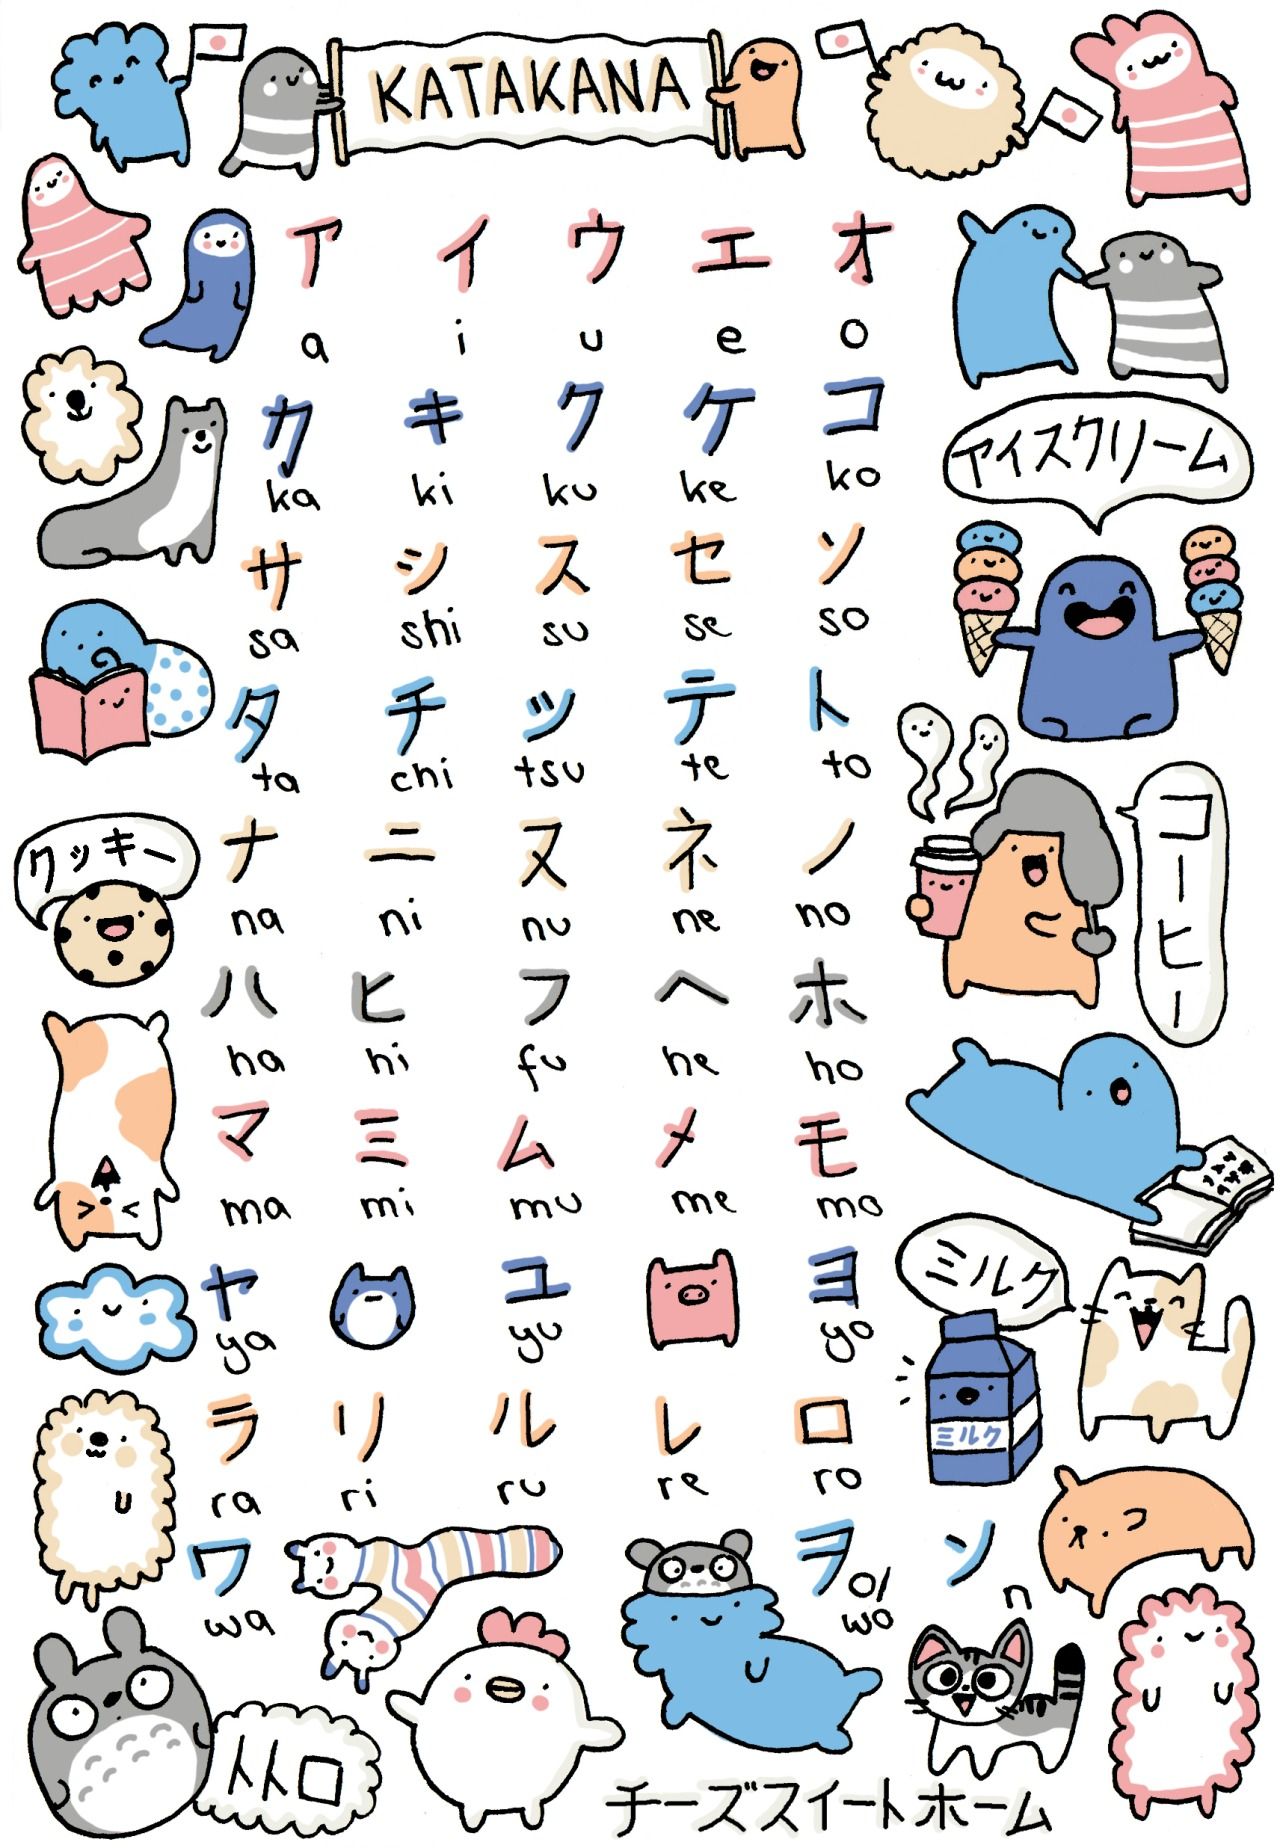 Bộ chữ cái Katakana đáng yêu đẹp nhất